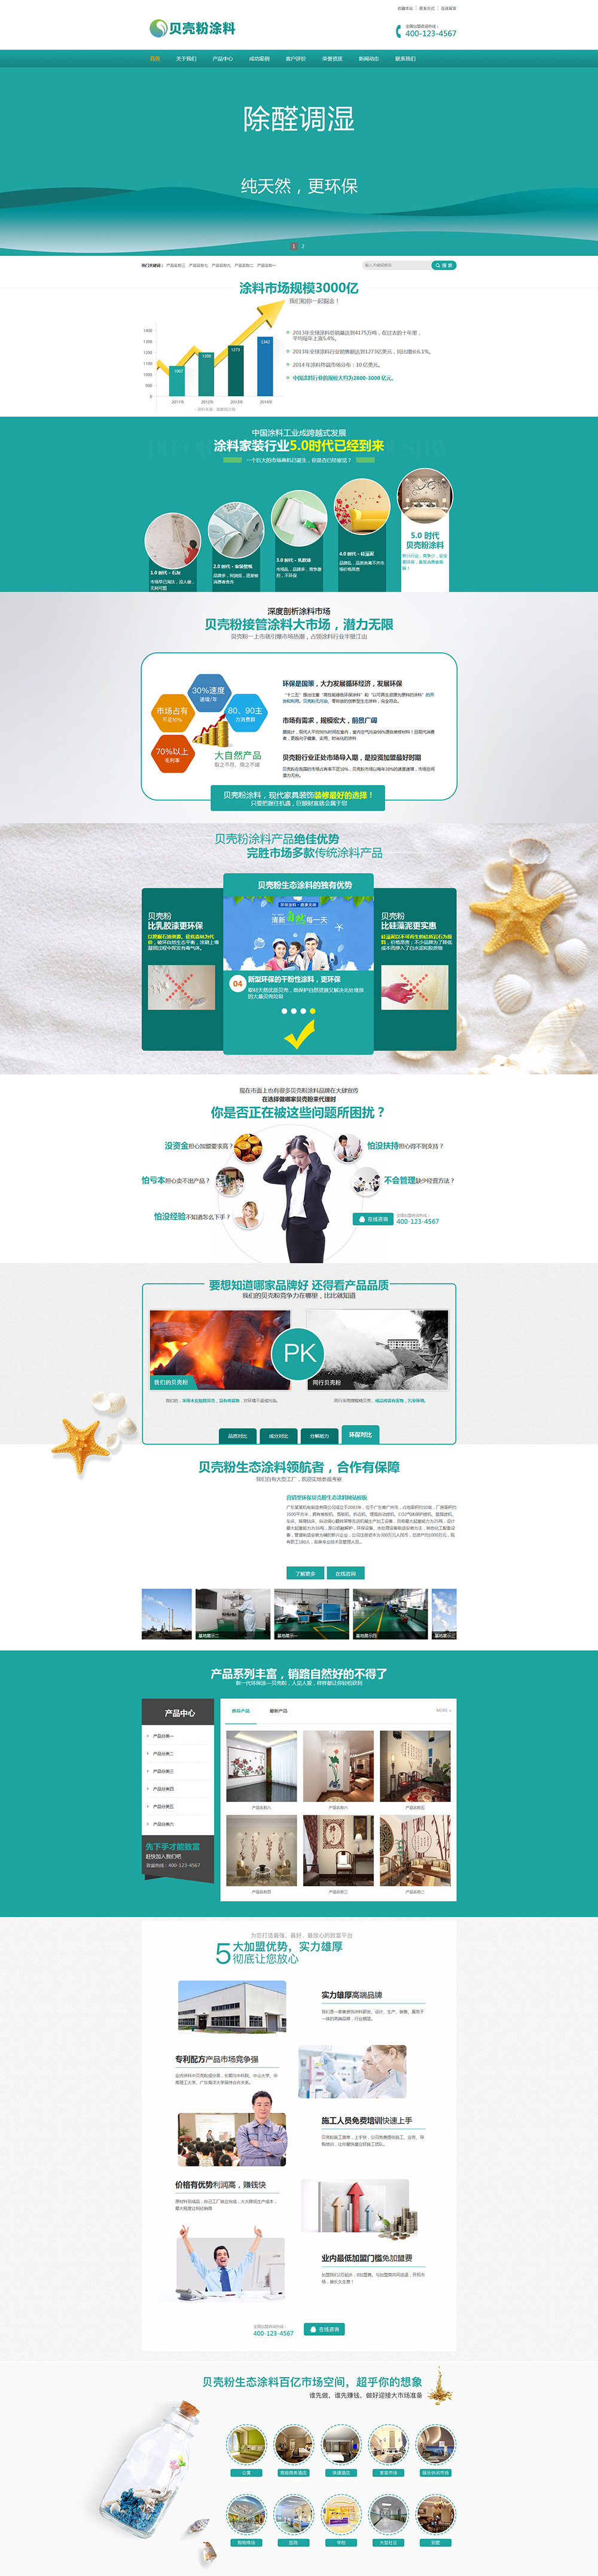 营销型环保贝壳粉生态涂料企业网站模板17